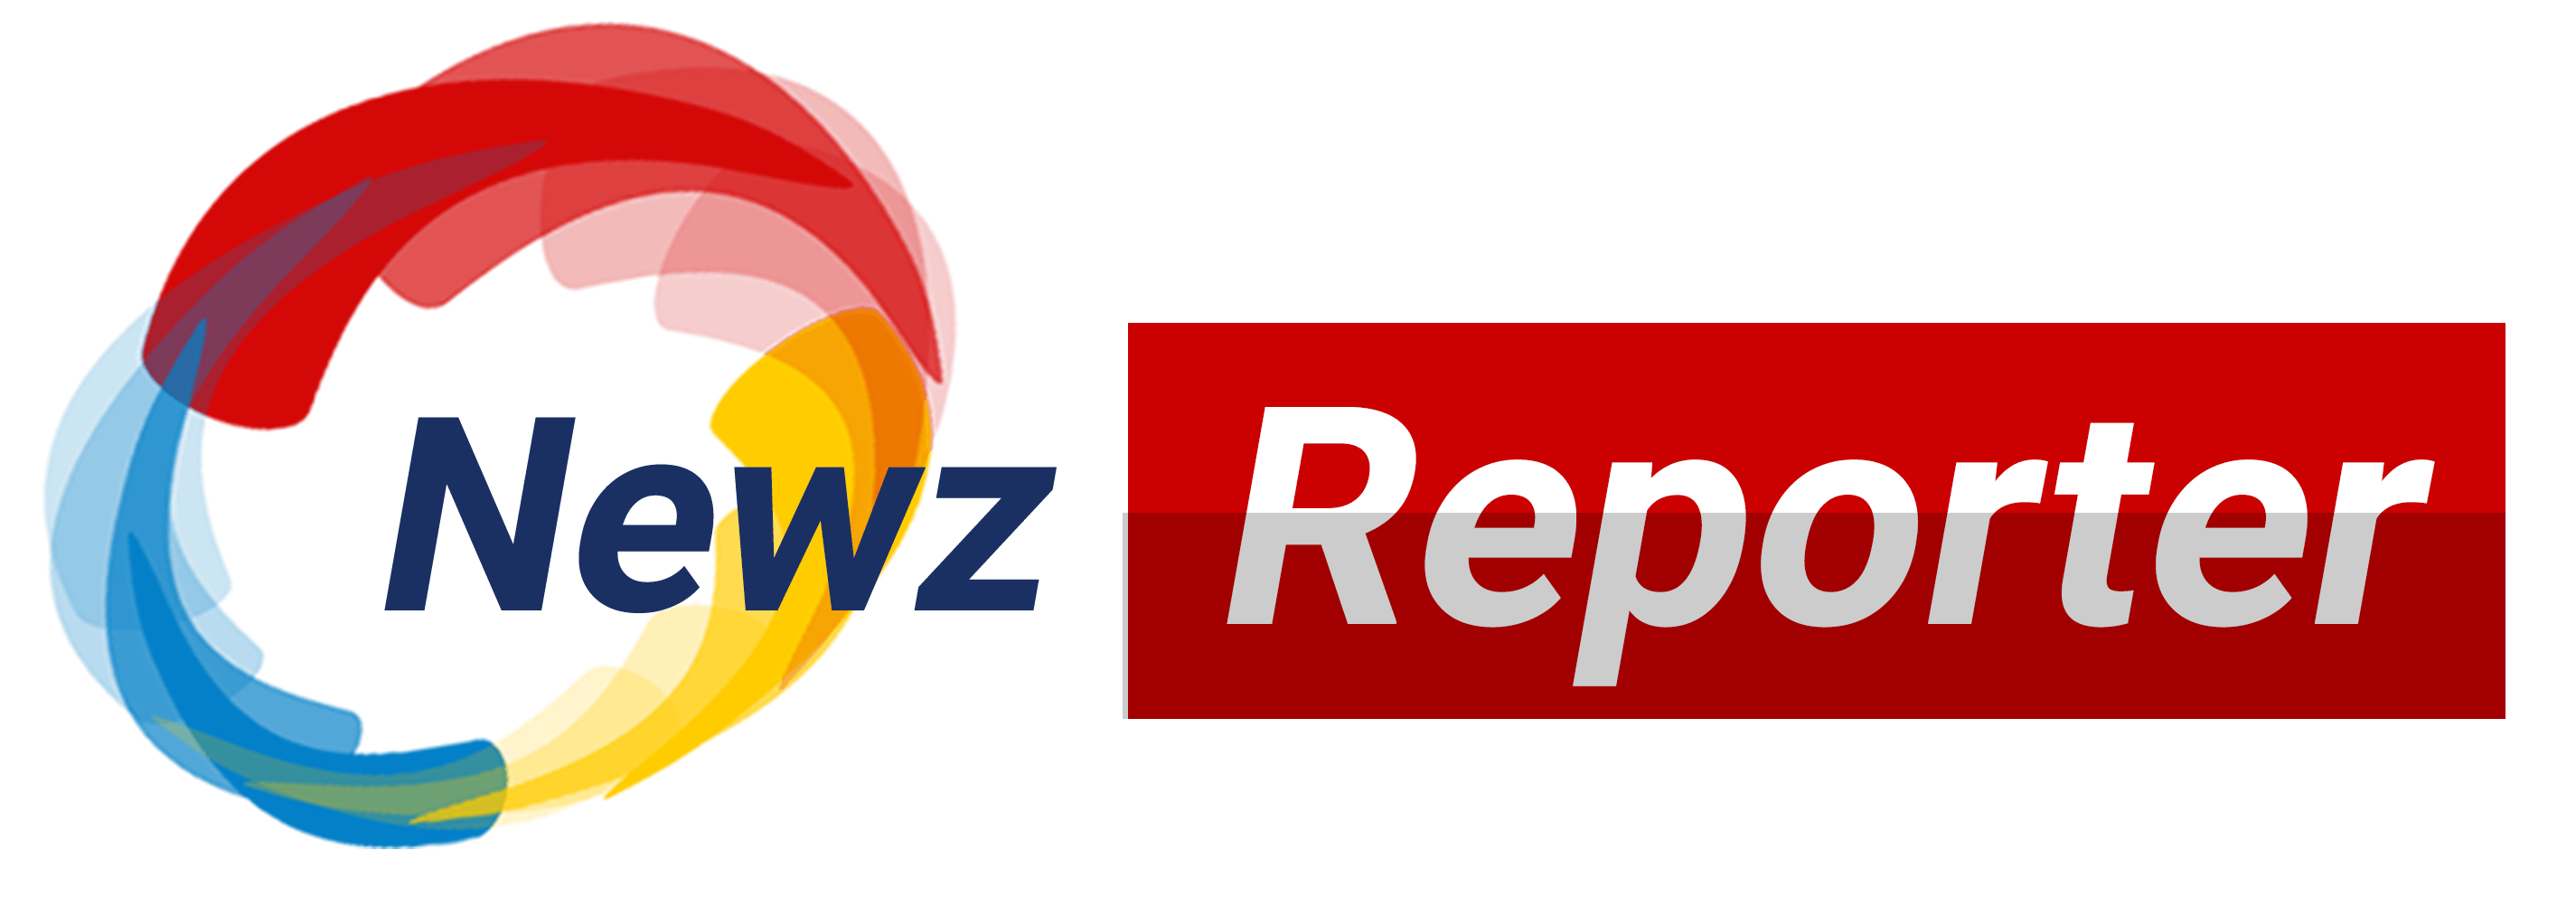 Newzreporter Logo